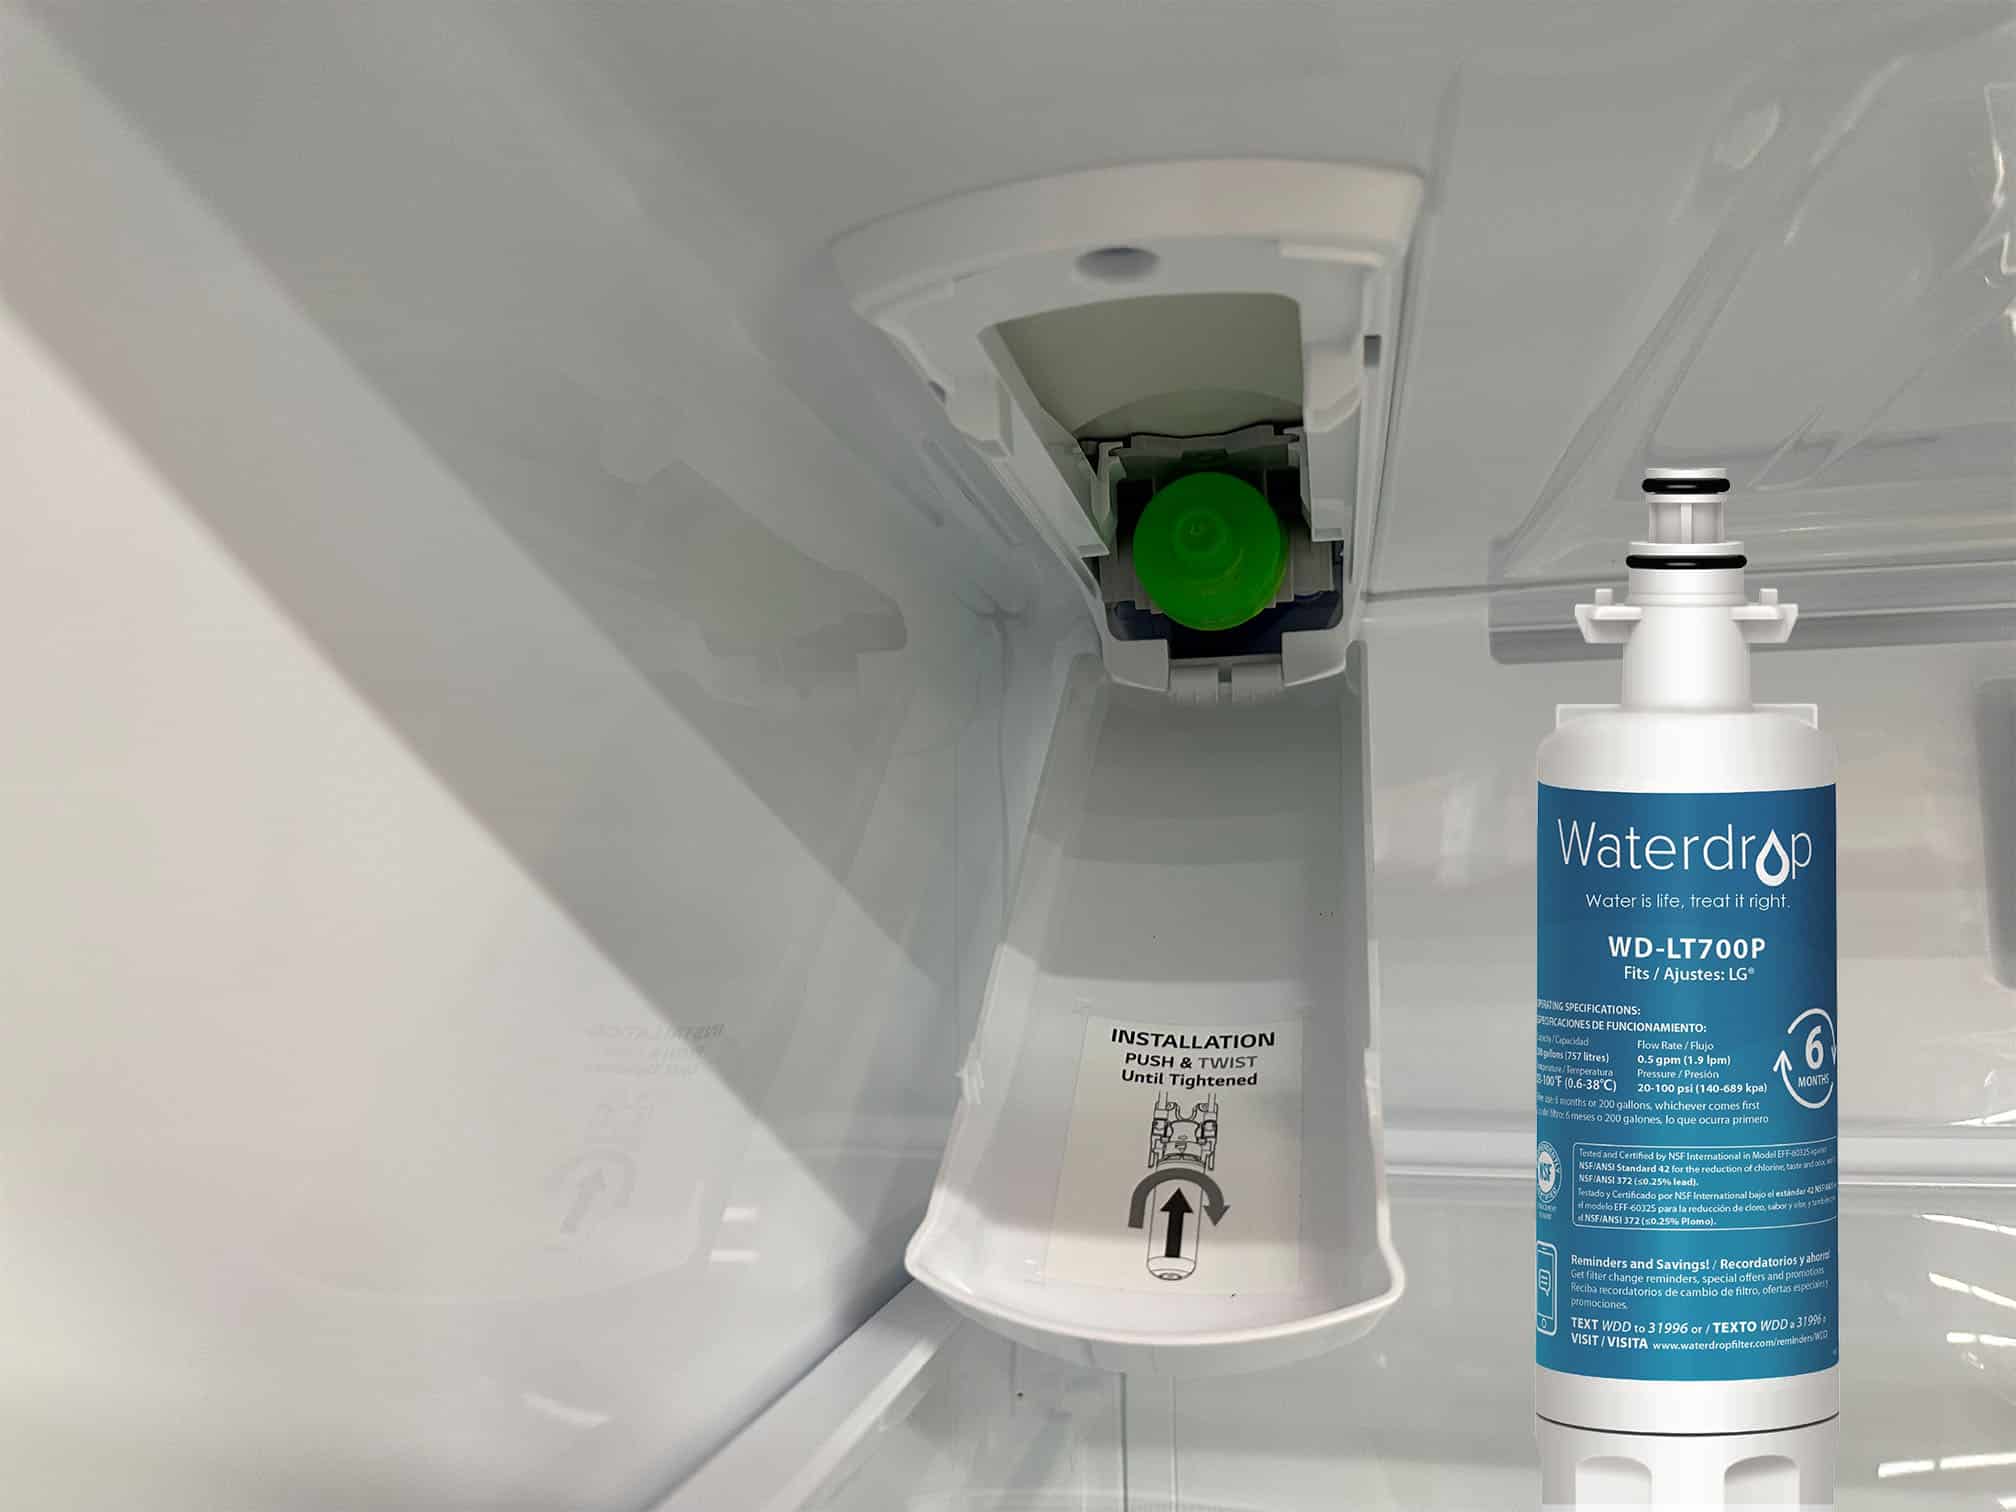 LG Refrigerator Water Filter Alternative 1 